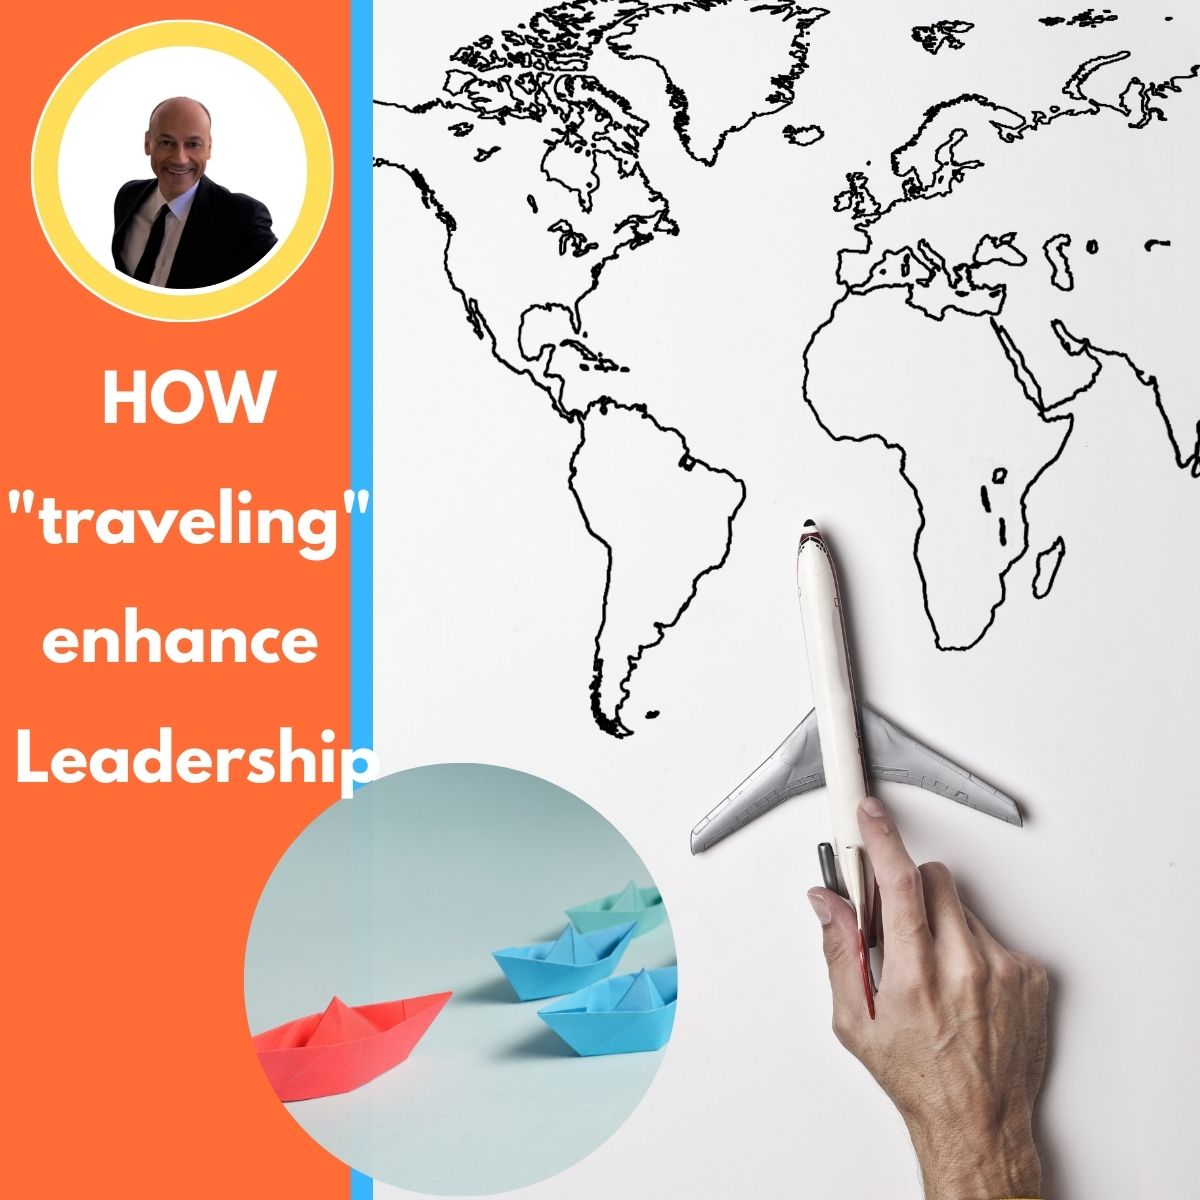 IN CHE MODO "viaggiare" migliora la Leadership--HOW  "traveling" enhance  Leadership